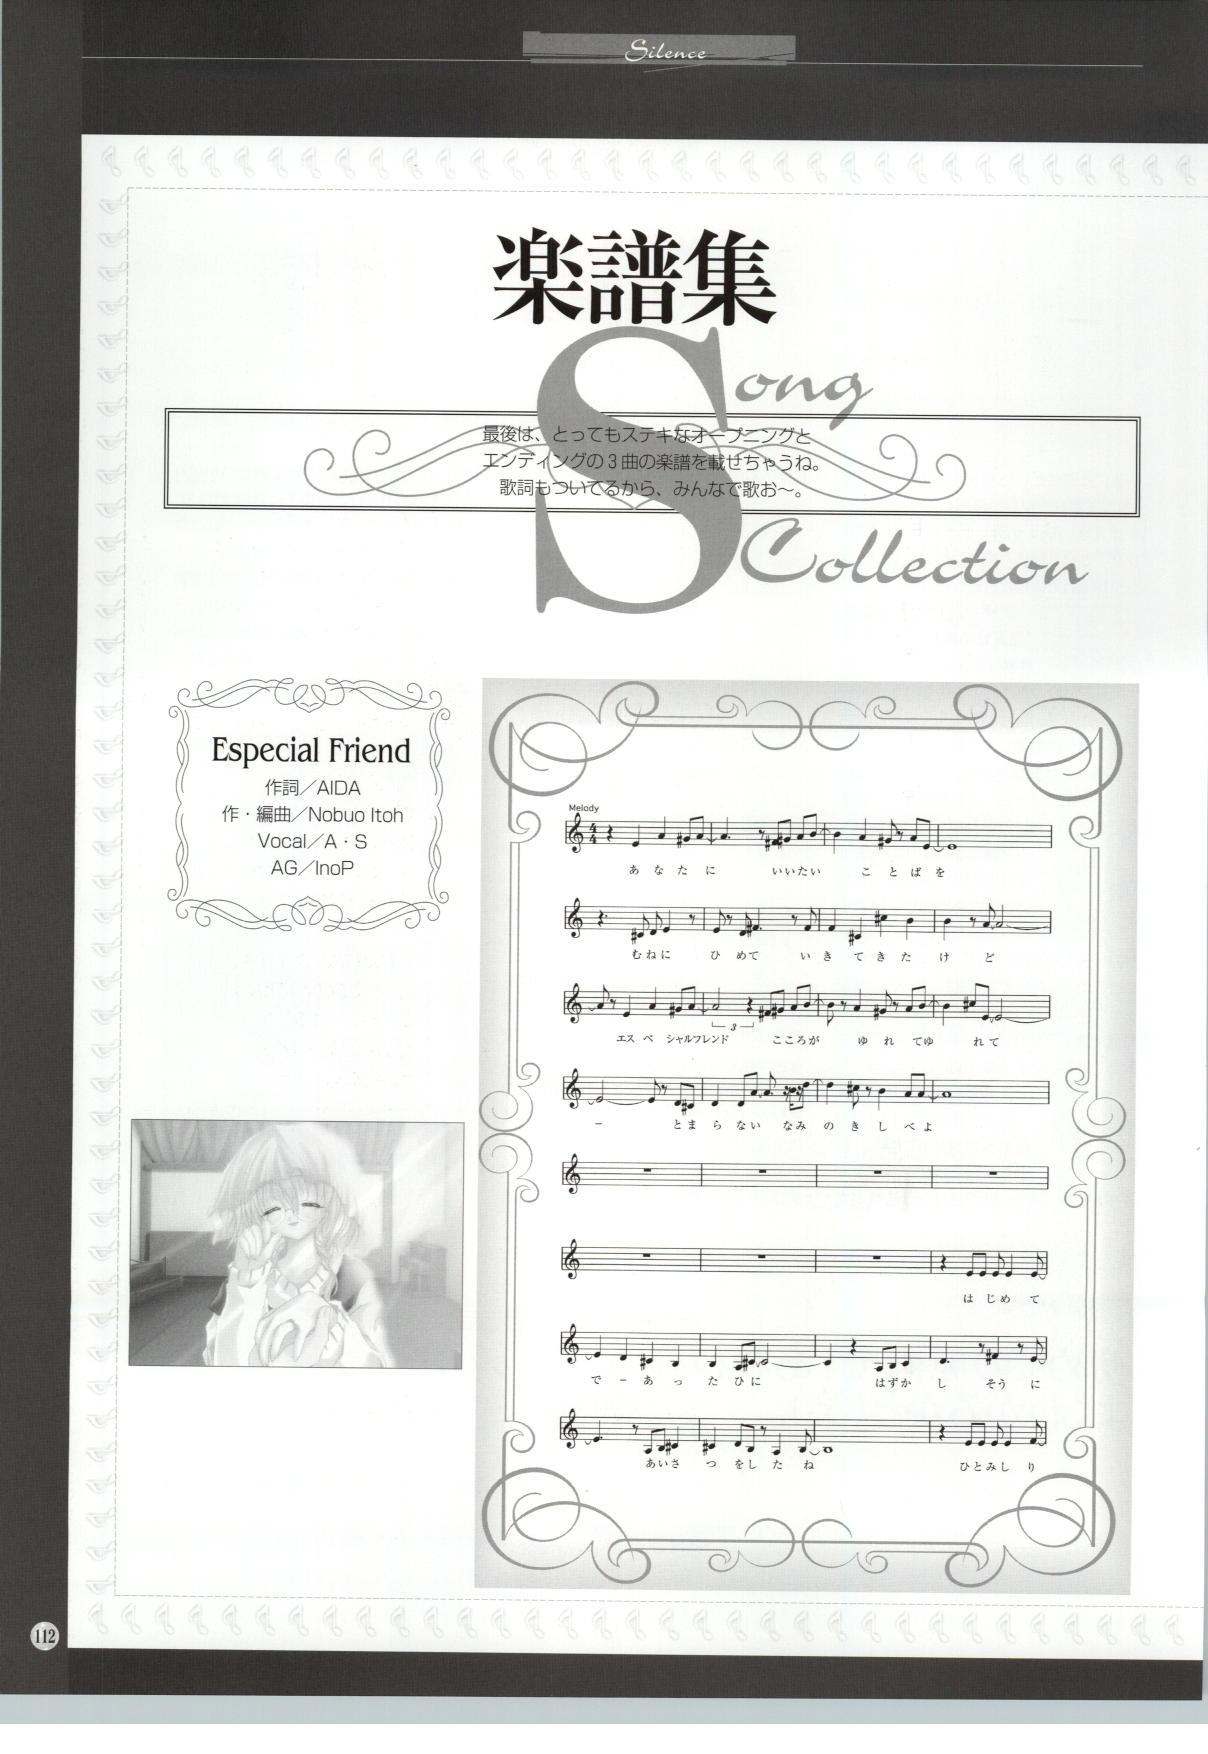 [Sakurazawa Izumi] Silence - Seinaru Yoru no Kane no Naka de... Tenshi no Album - Sakurazawa Izumi Artworks 106